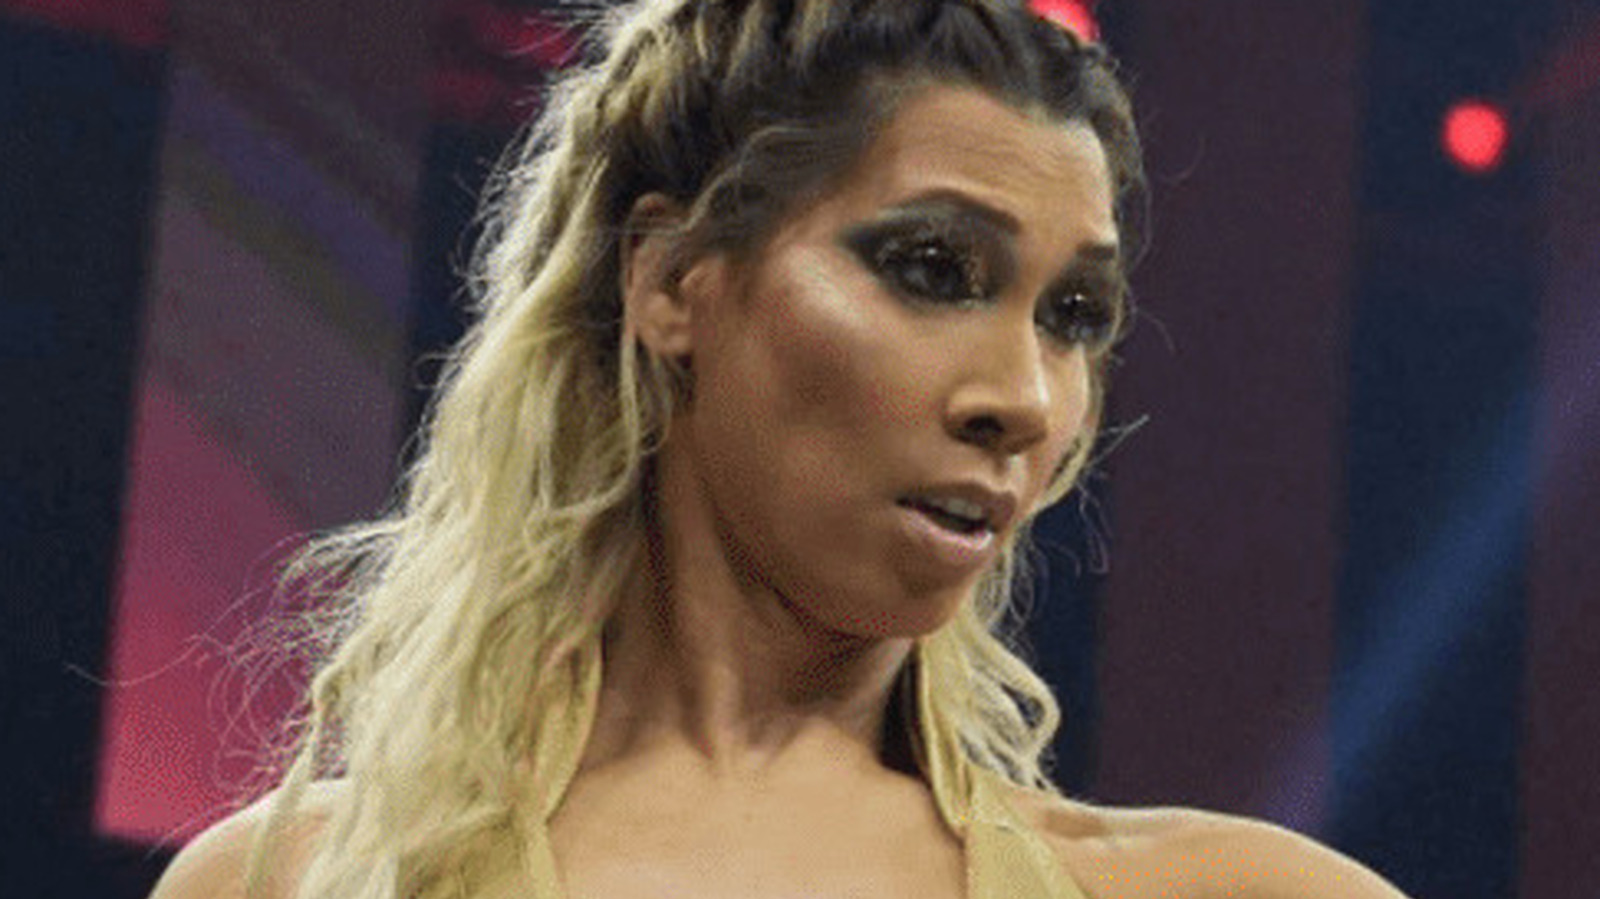 Gisele Shaw de Impact llama a Rick Steiner por su diatriba transfóbica en el evento de firma